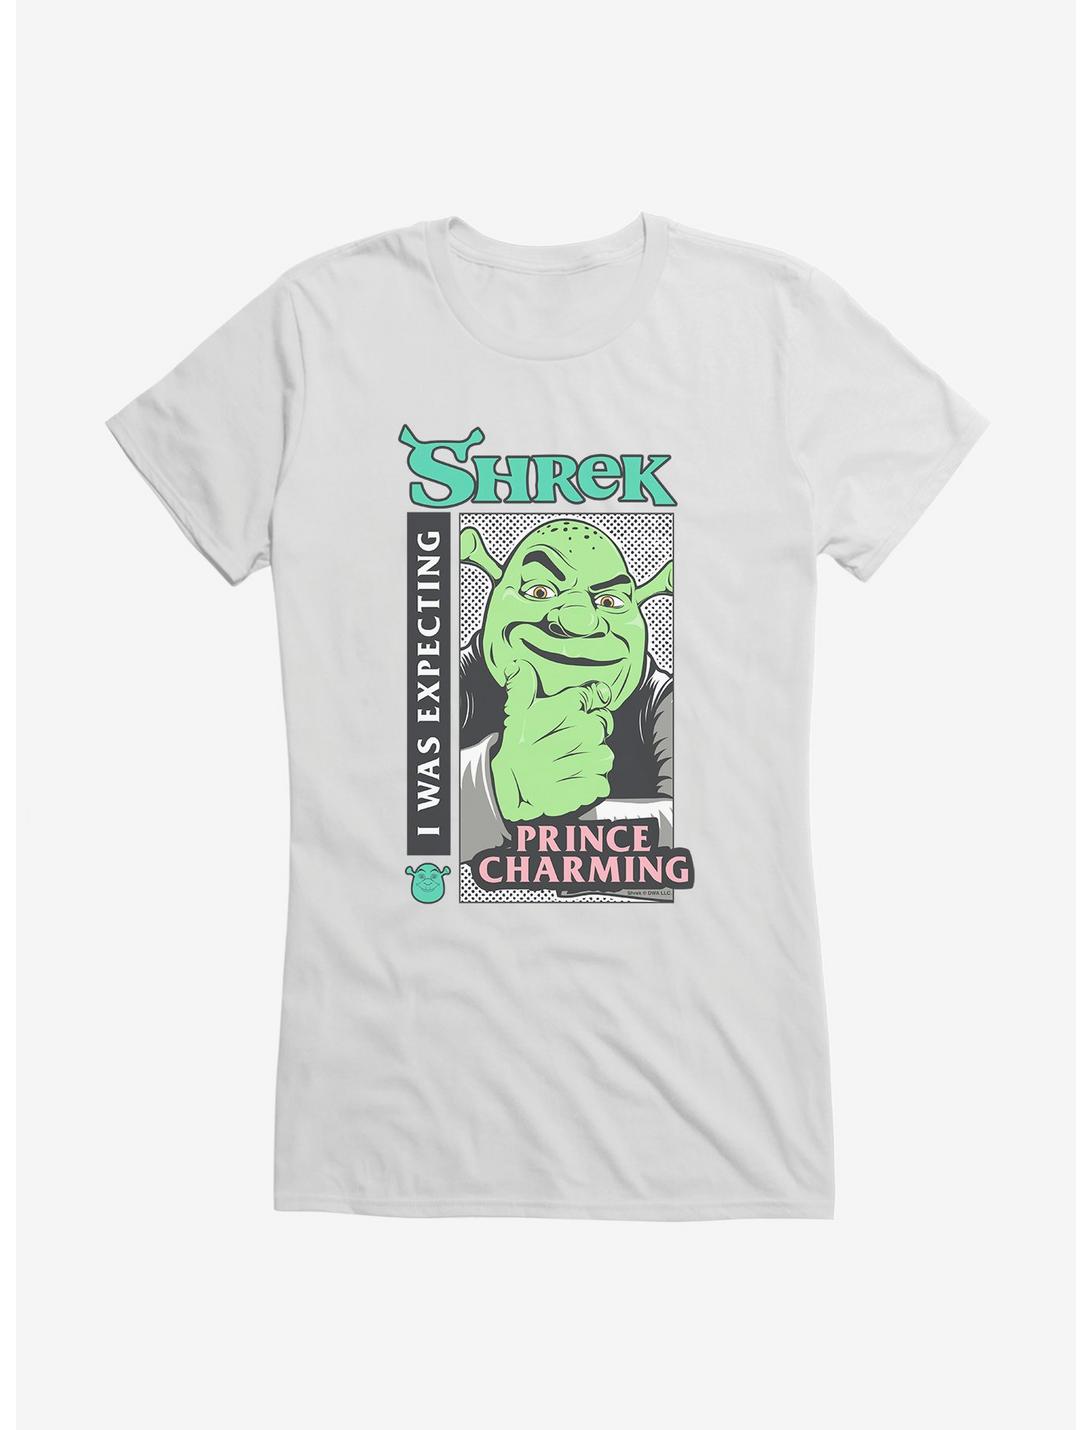 Shrek Prince Charming Girls T-Shirt - BLACK | Hot Topic